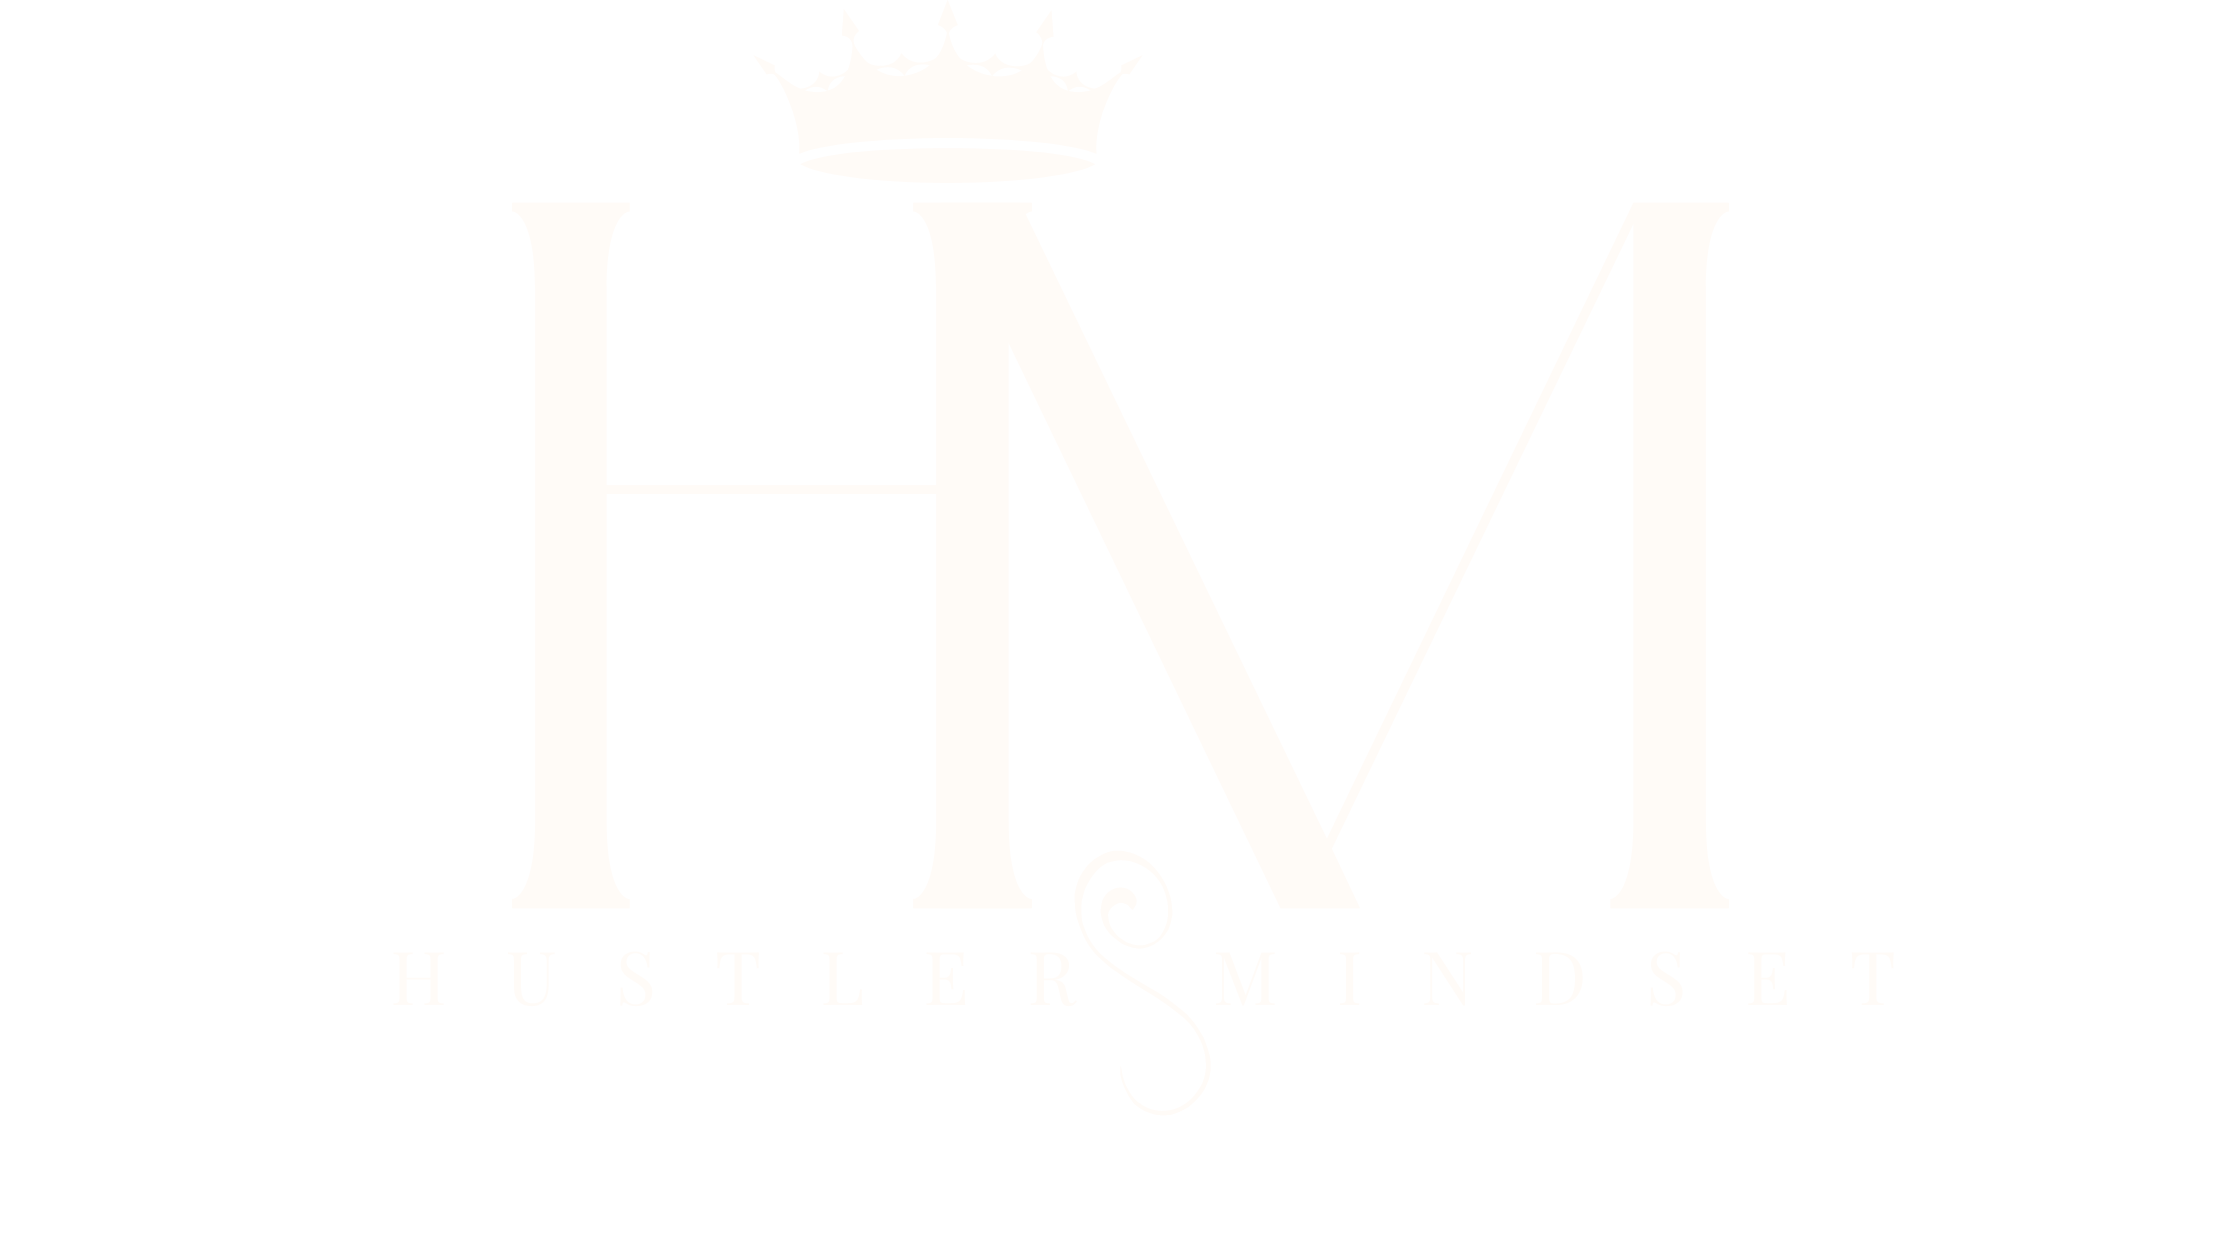 Hustlertaughtme LLC